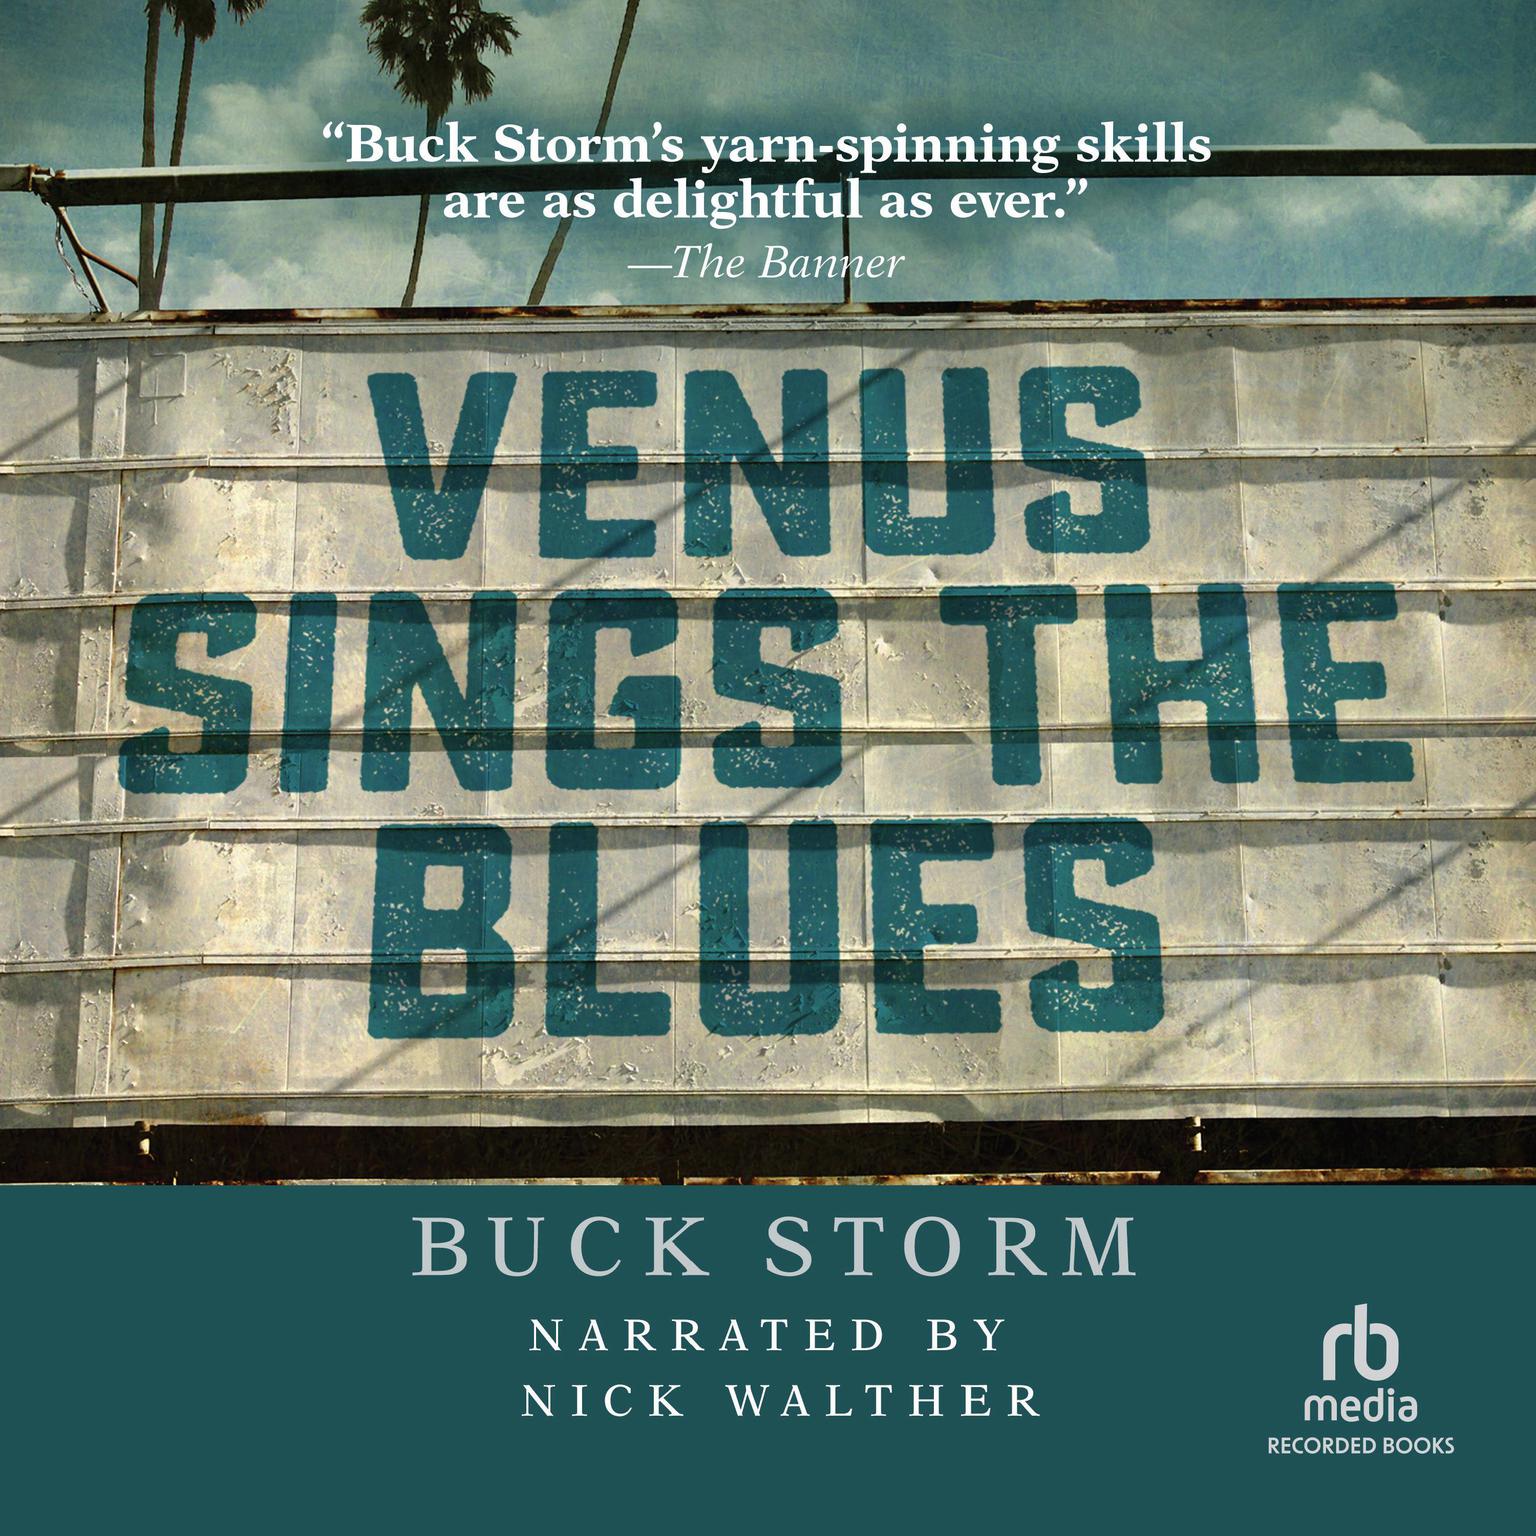 Venus Sings the Blues Audiobook, by Buck Storm